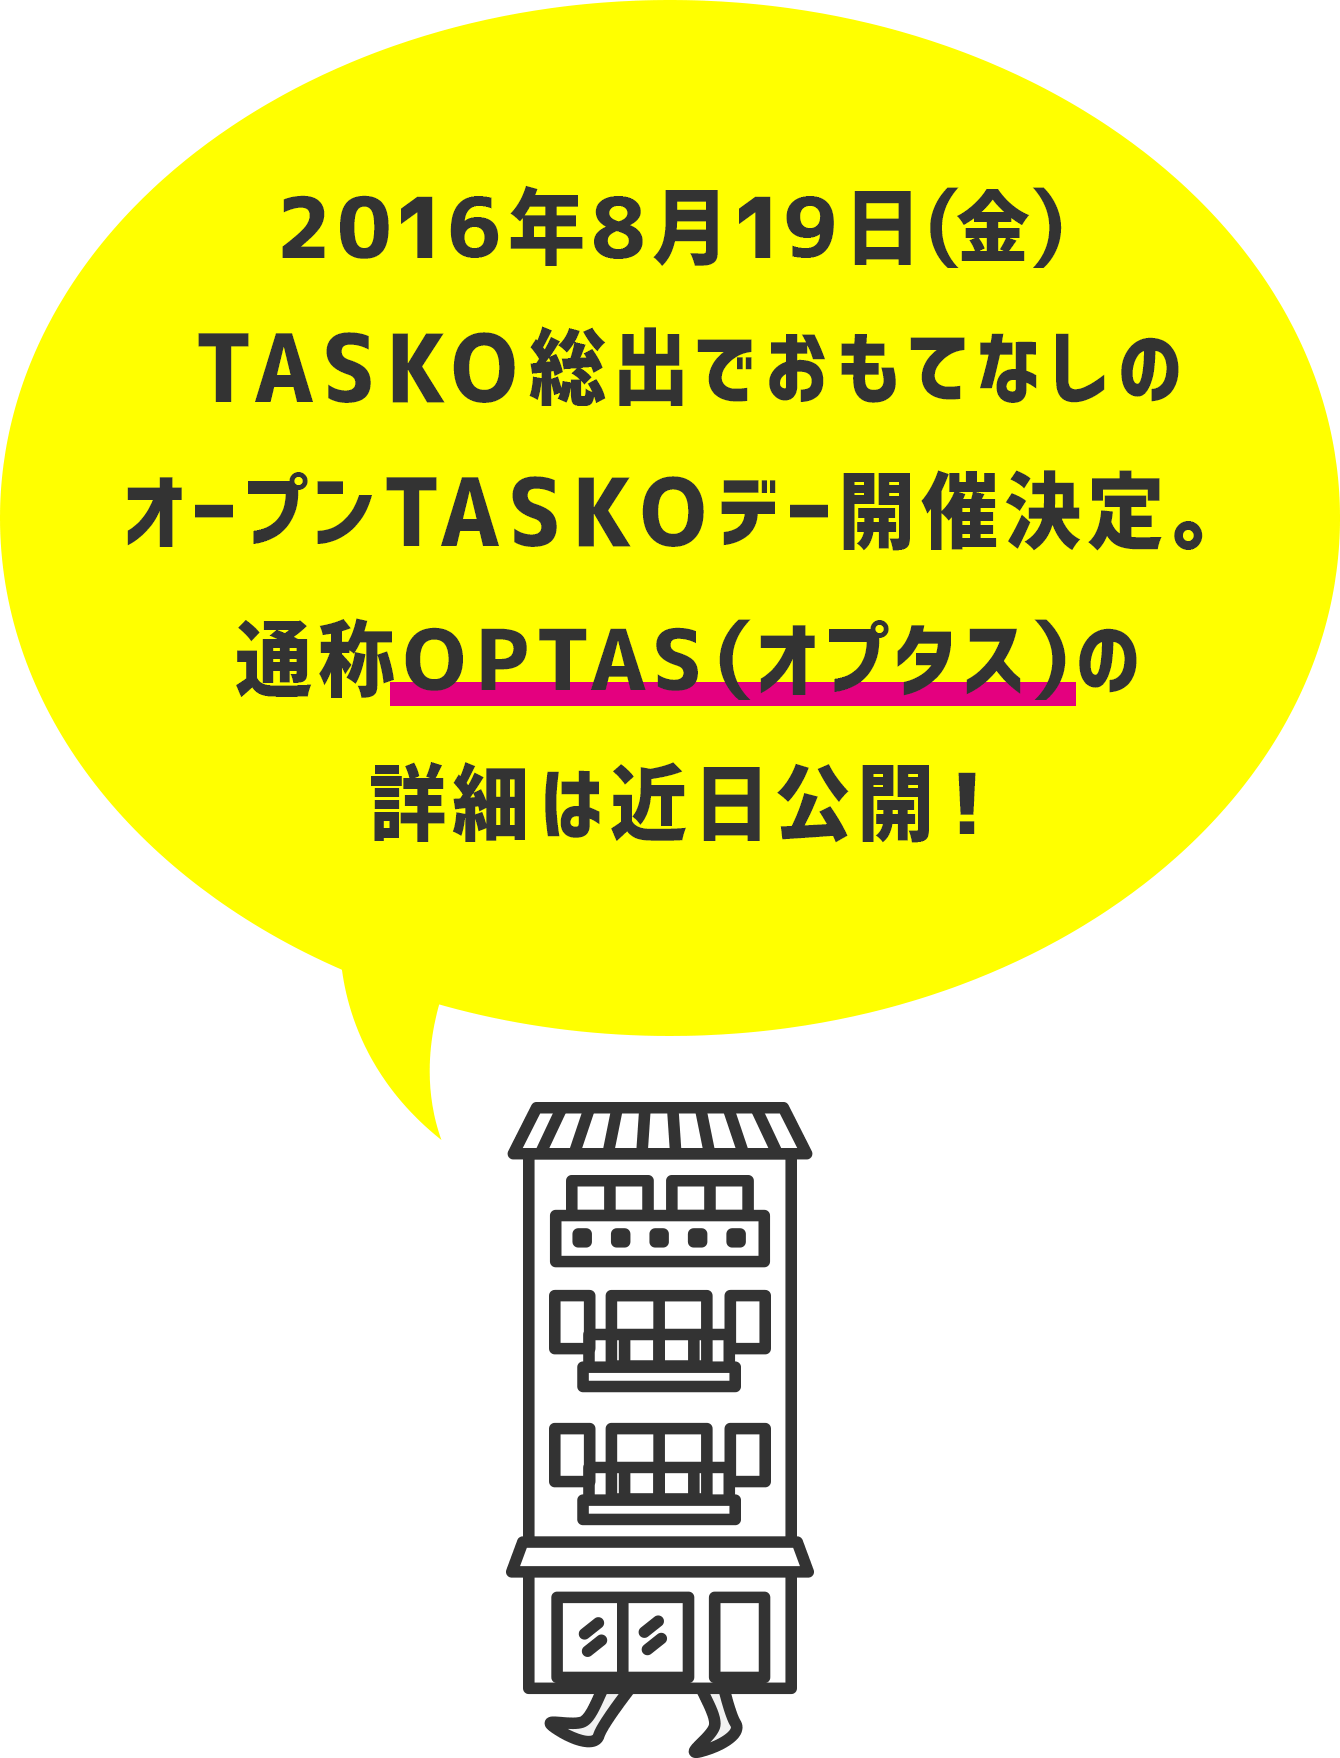 2016年8月19日（金）TASKO総出でおもてなしのオープンTASKOデー開催決定。通称OPTAS（オプタス）の詳細は近日公開！